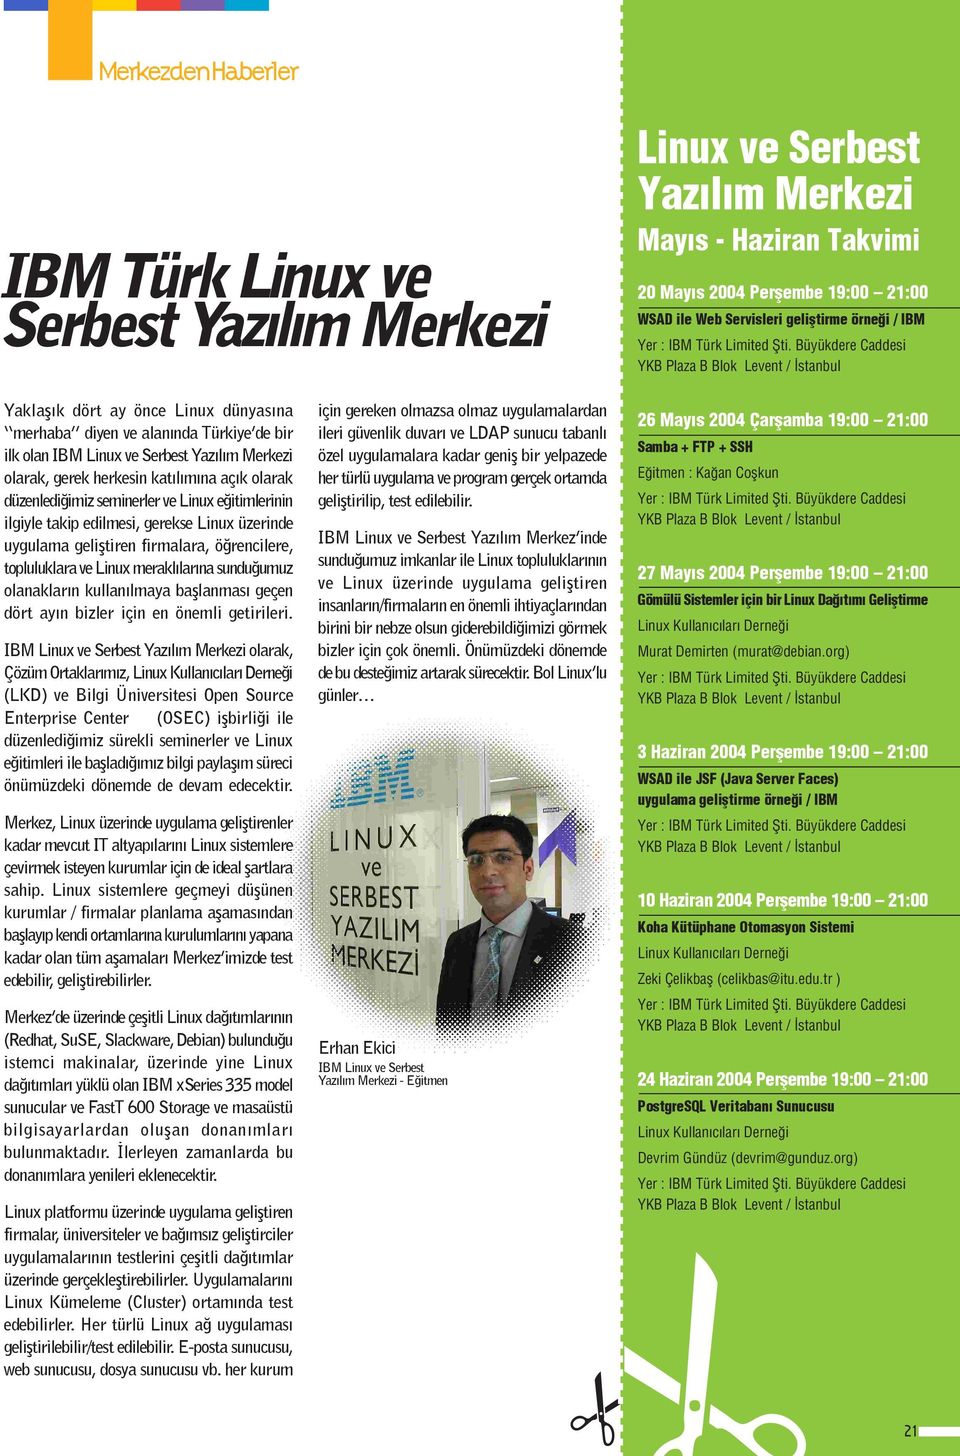 Büyükdere Caddesi YKB Plaza B Blok Levent / stanbul Yaklafl k dört ay önce Linux dünyas na merhaba diyen ve alan nda Türkiye de bir ilk olan IBM Linux ve Serbest Yaz l m Merkezi olarak, gerek